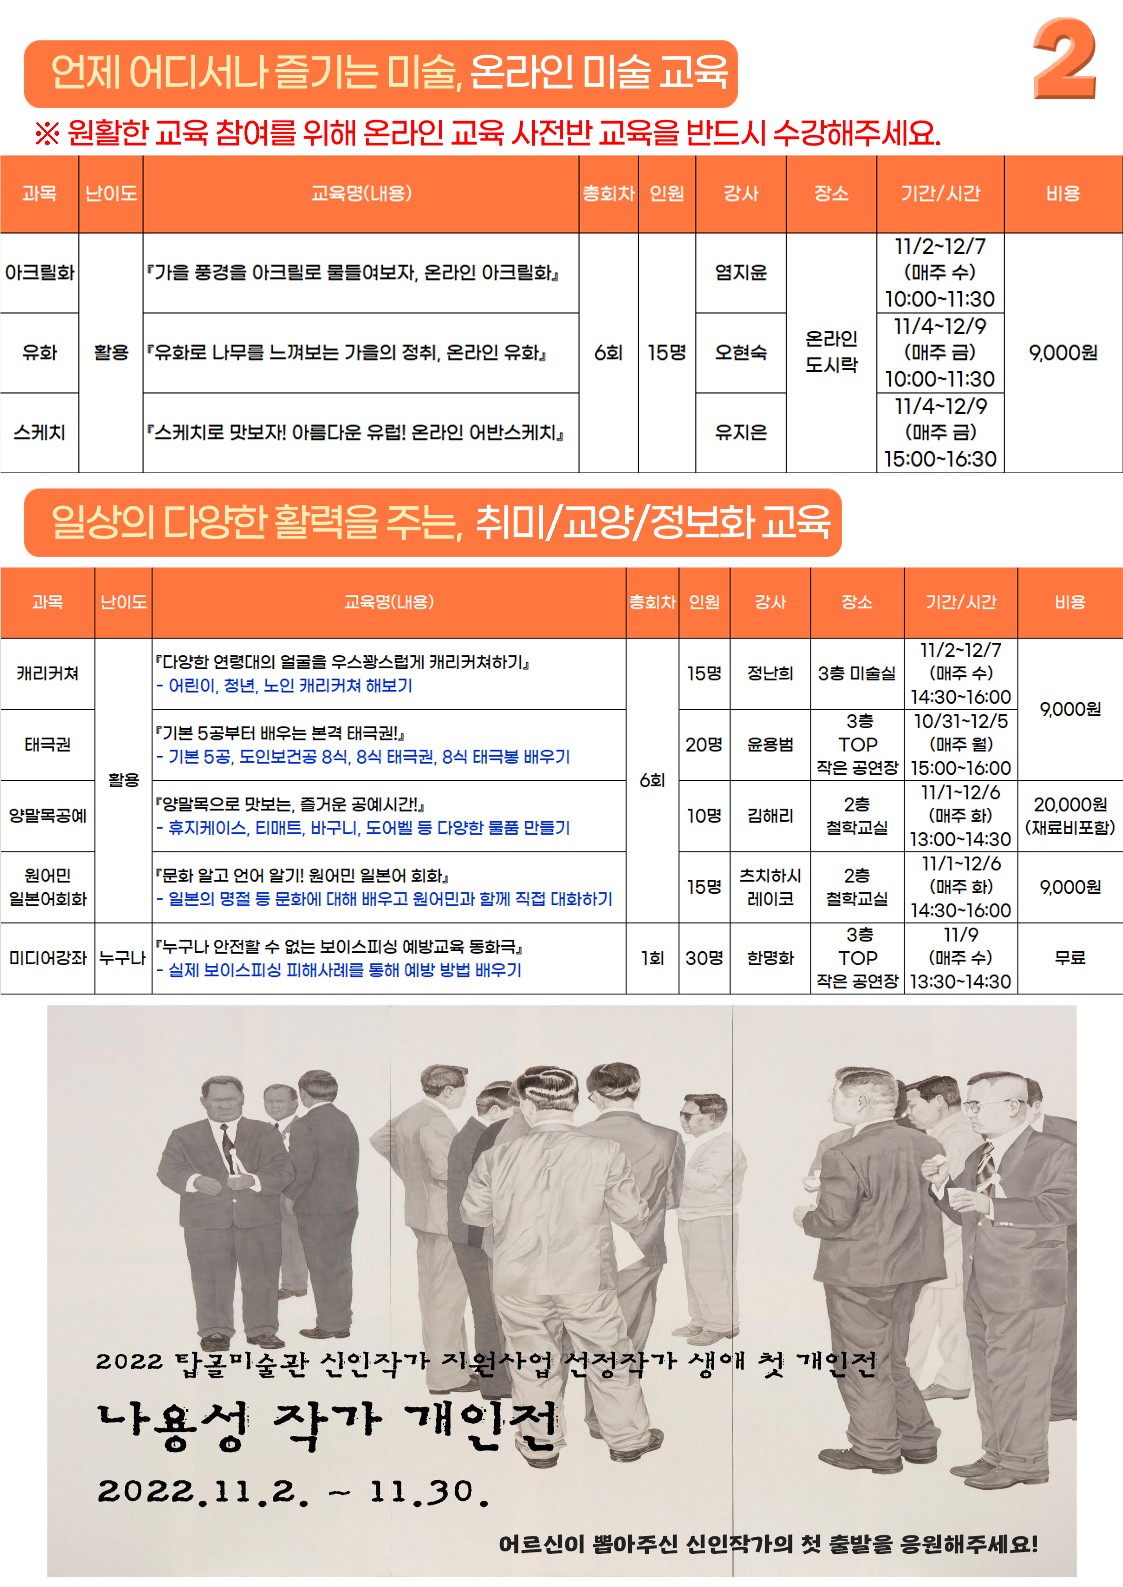 22년-2기-평생교육-홍보지_최종본F_2.jpg